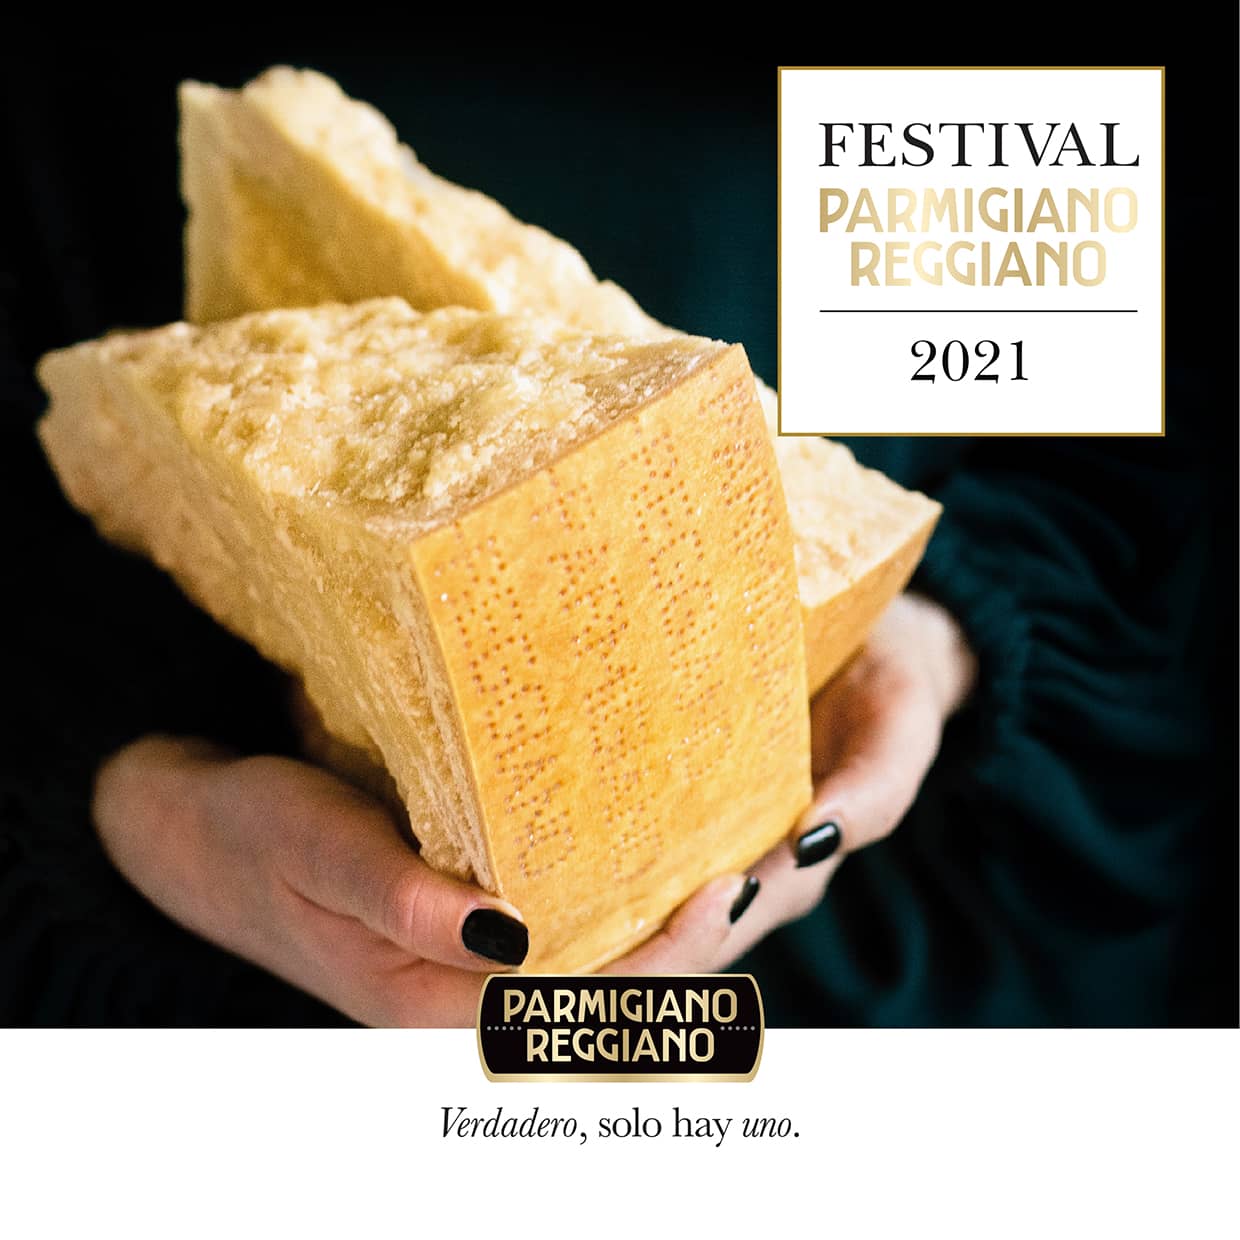 Llega el Festival Parmigiano Reggiano 2021